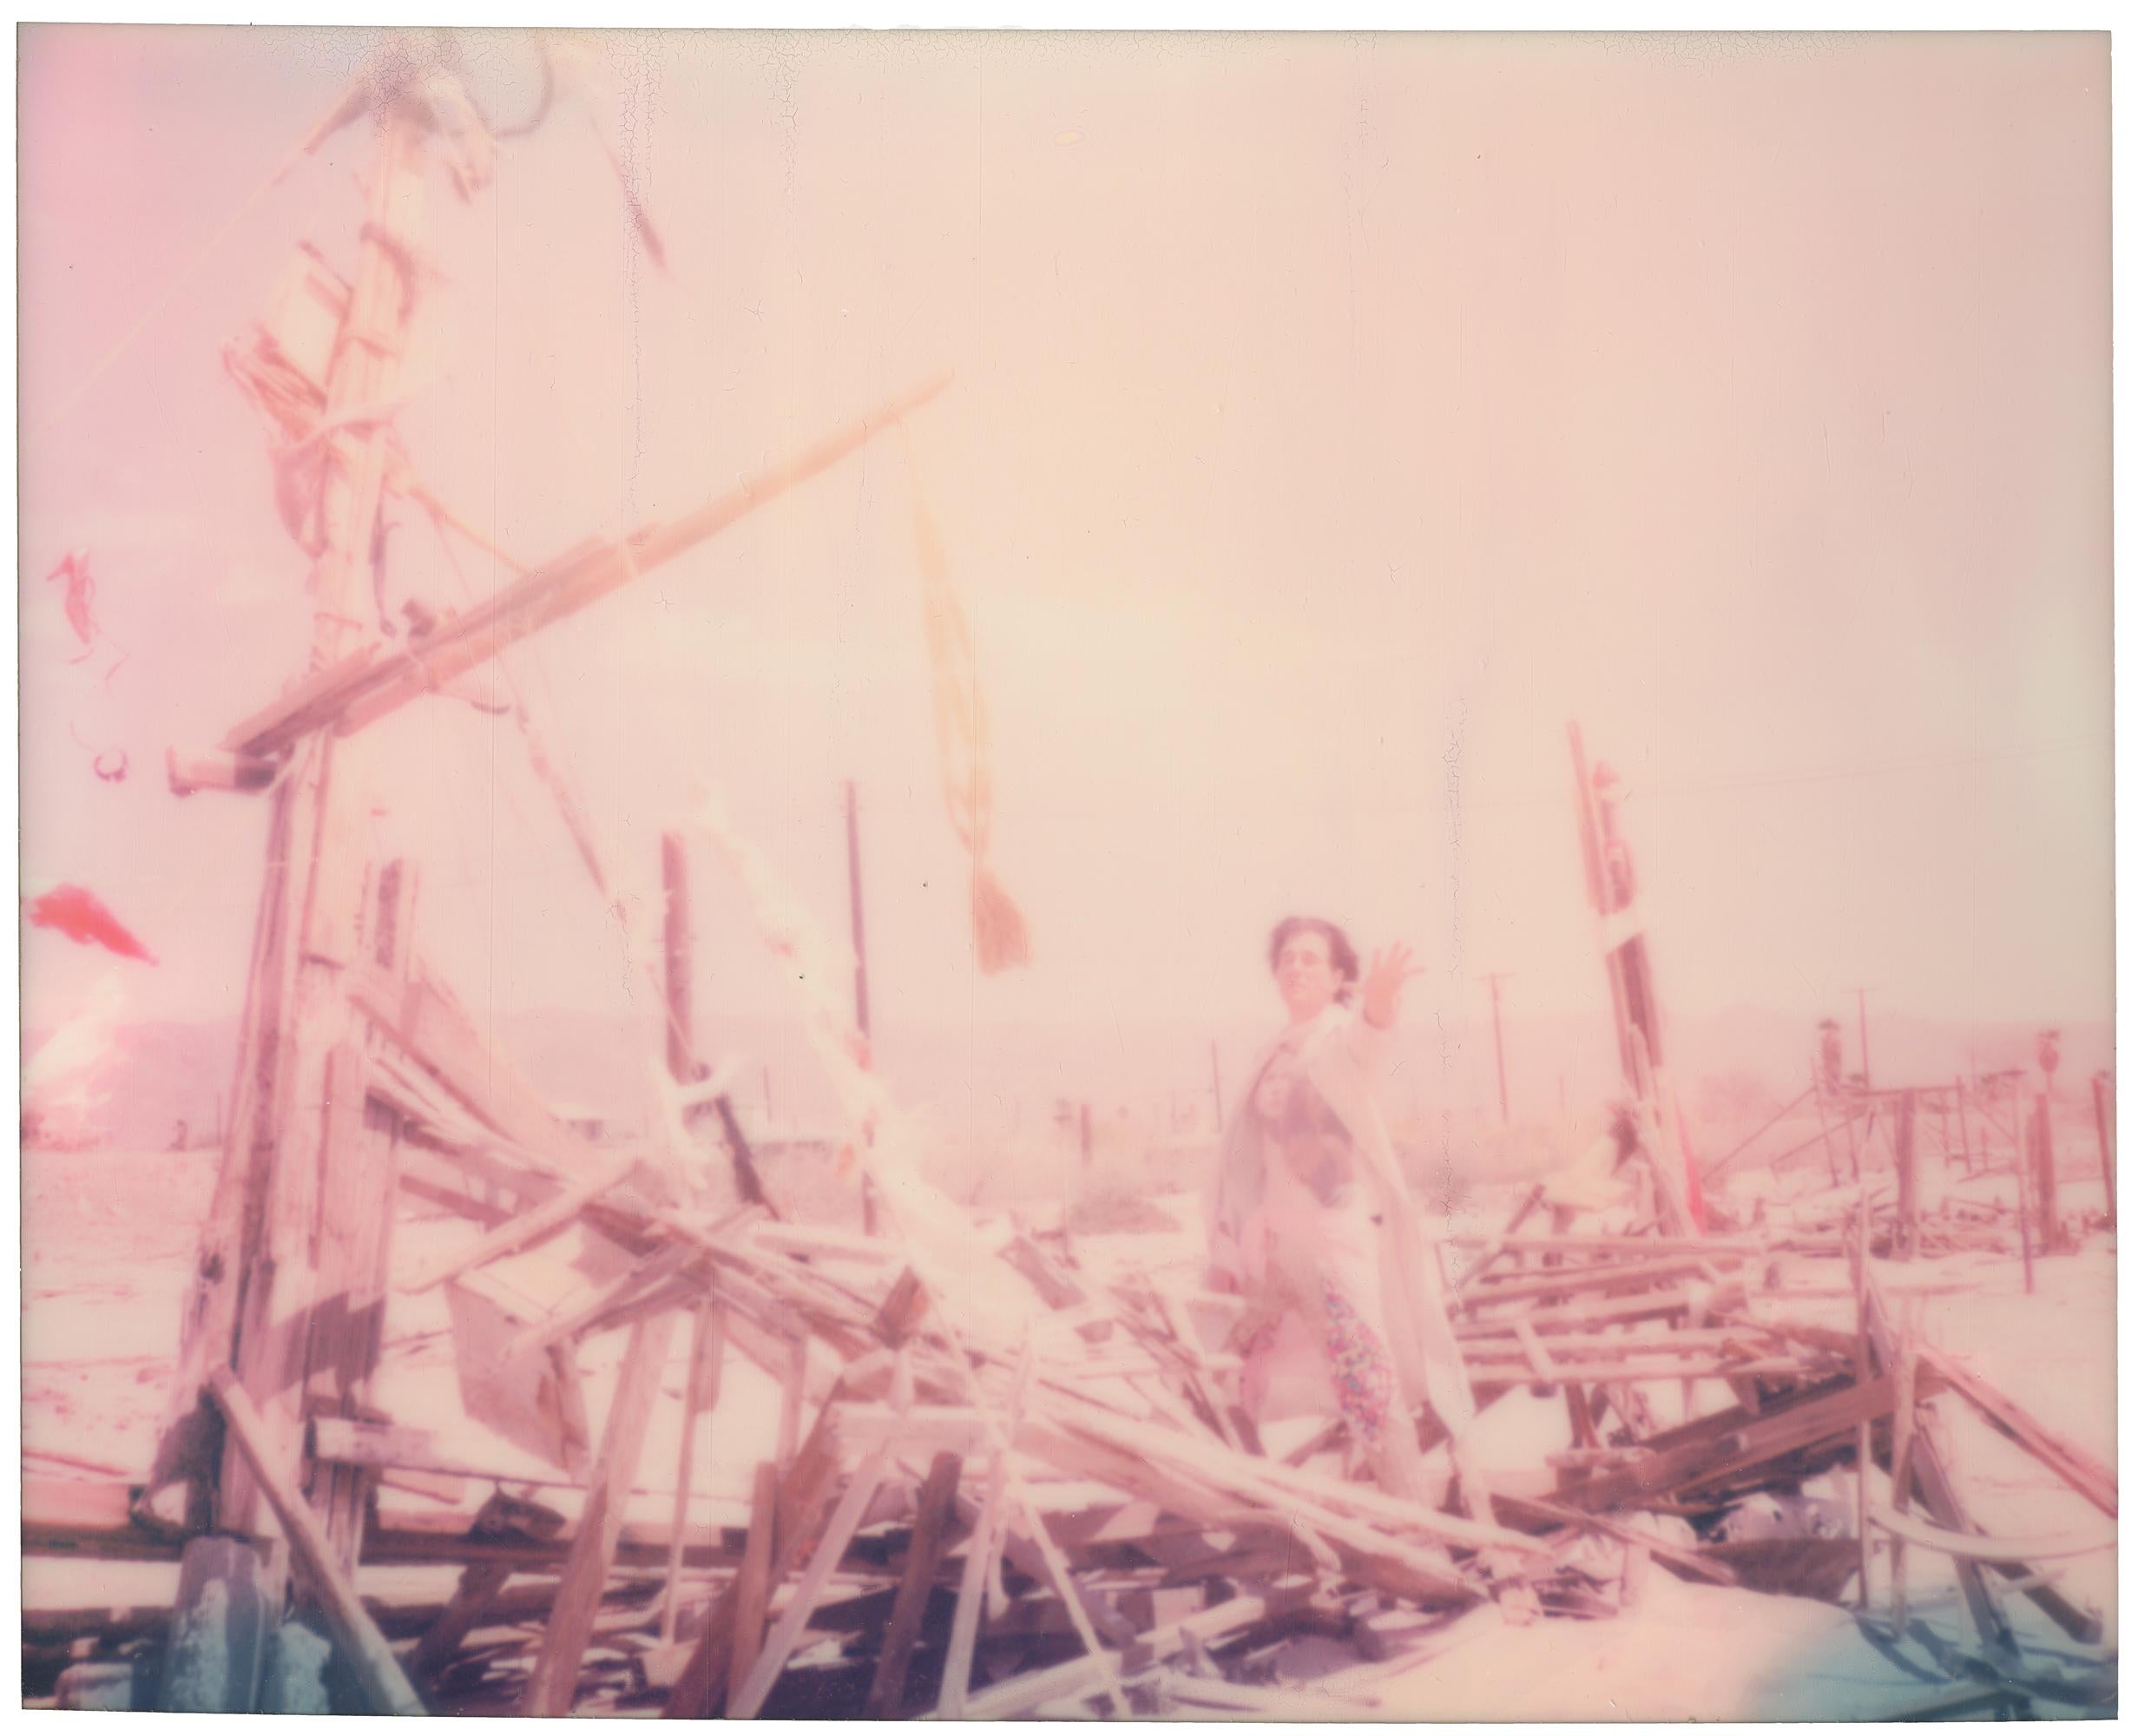 Stefanie Schneider Portrait Photograph – Bombay Beach Pirates (Ensign Broderick Platten Shoot 'Blood Crush') 